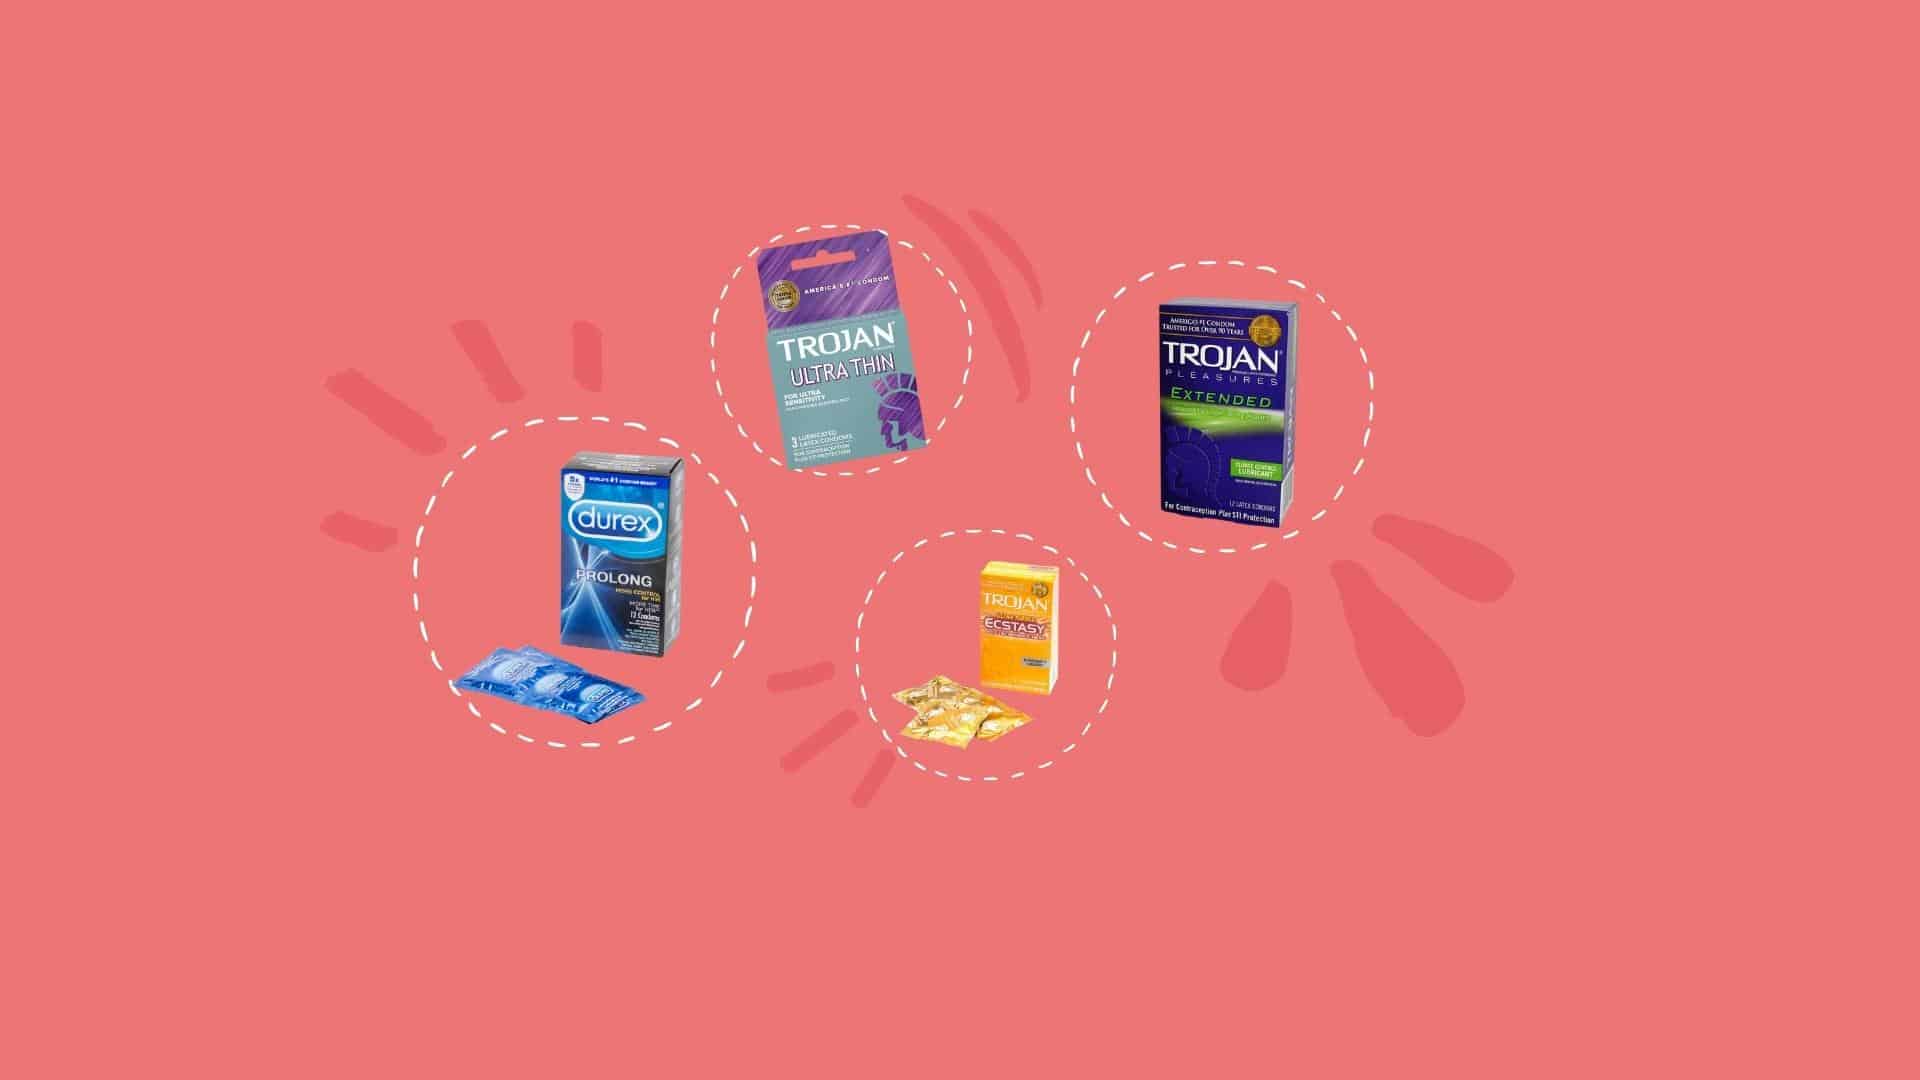 9 Best Condoms For Women to Enhance Her Pleasure